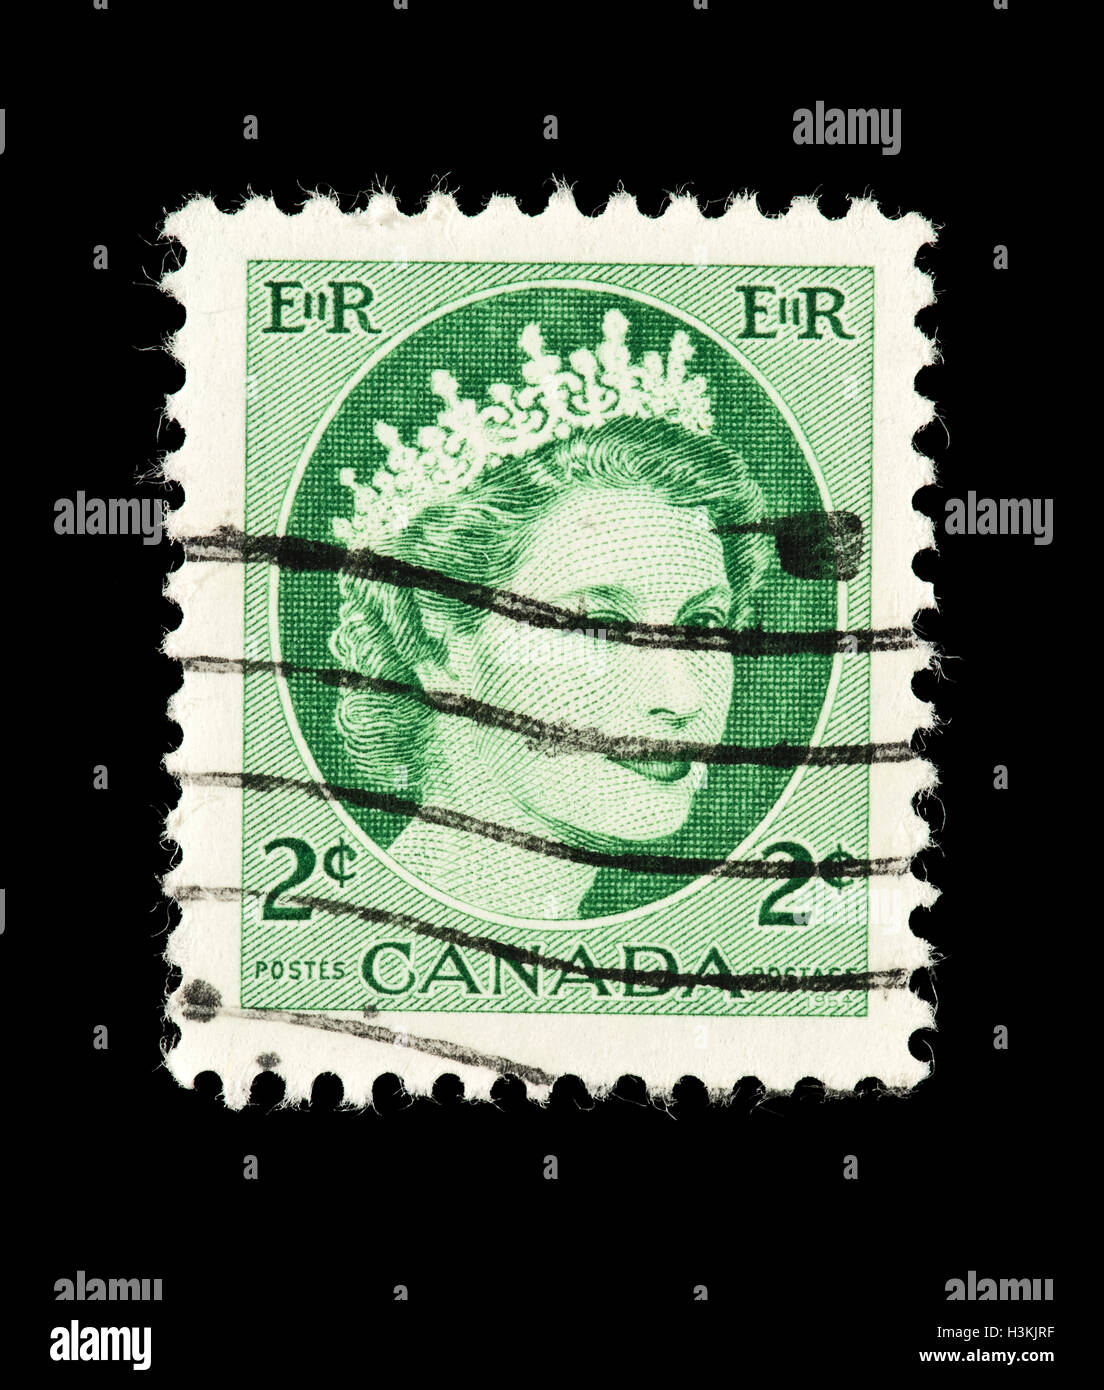 Francobollo dal Canada raffigurante la regina Elisabetta II di Gran Bretagna. Foto Stock